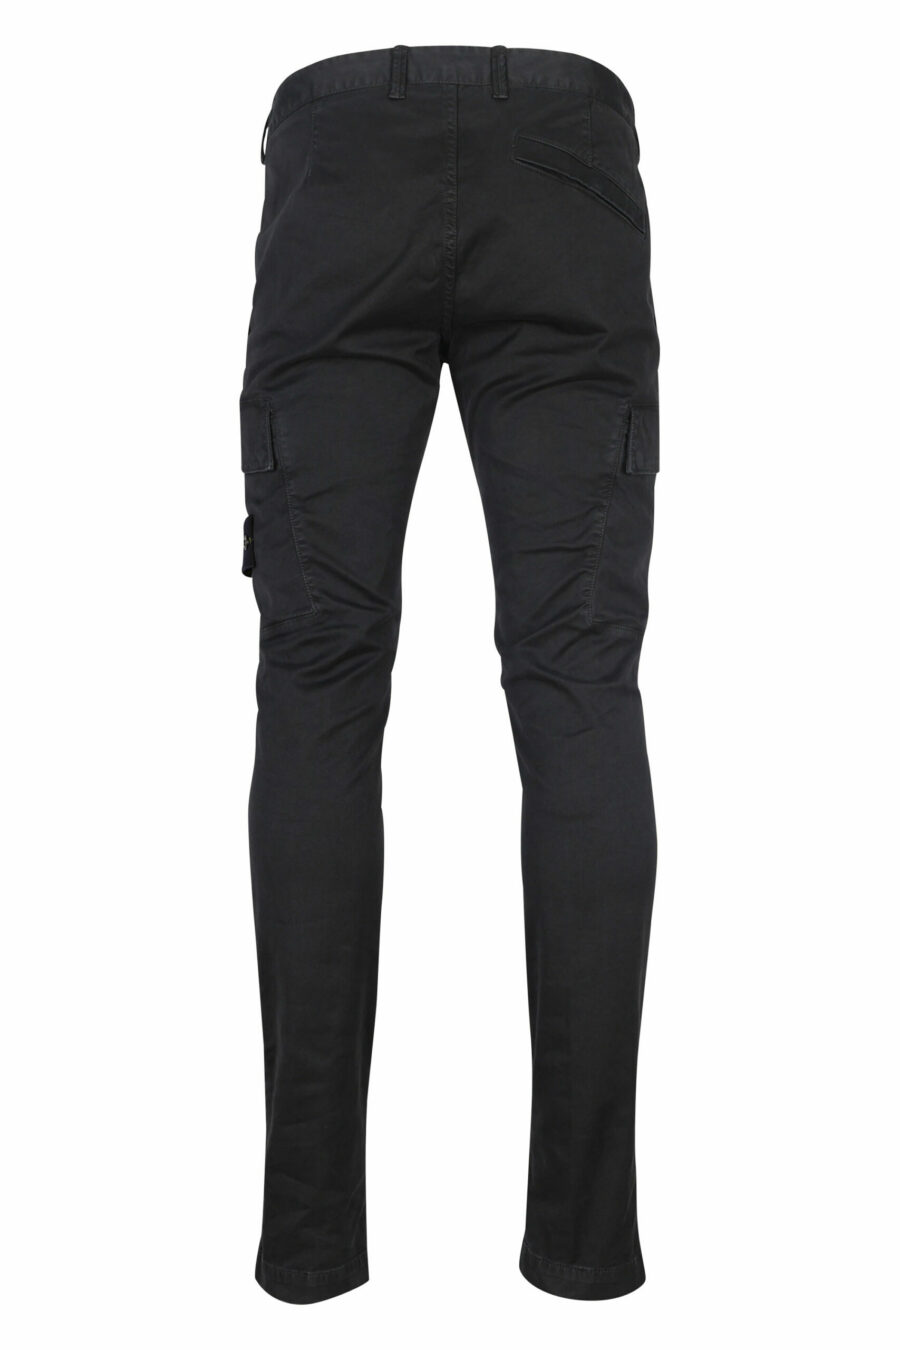 Pantalon skinny noir avec patch logo sur le côté - 8052572762253 2 scaled